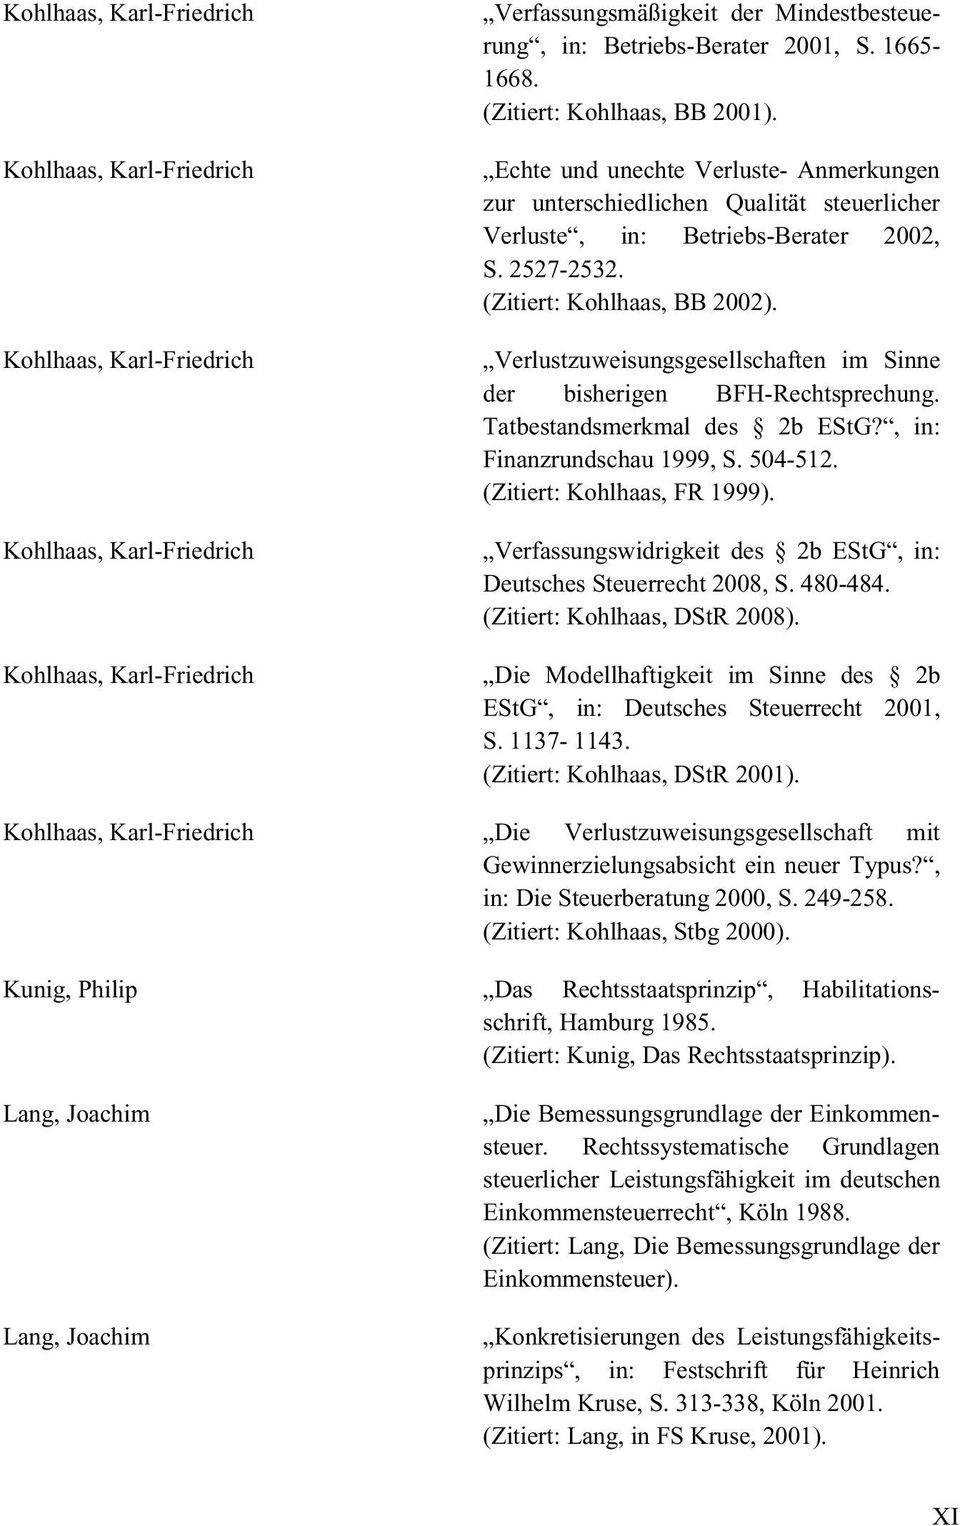 (Zitiert: Kohlhaas, BB 2002). Verlustzuweisungsgesellschaften im Sinne der bisherigen BFH-Rechtsprechung. Tatbestandsmerkmal des 2b EStG?, in: Finanzrundschau 1999, S. 504-512.